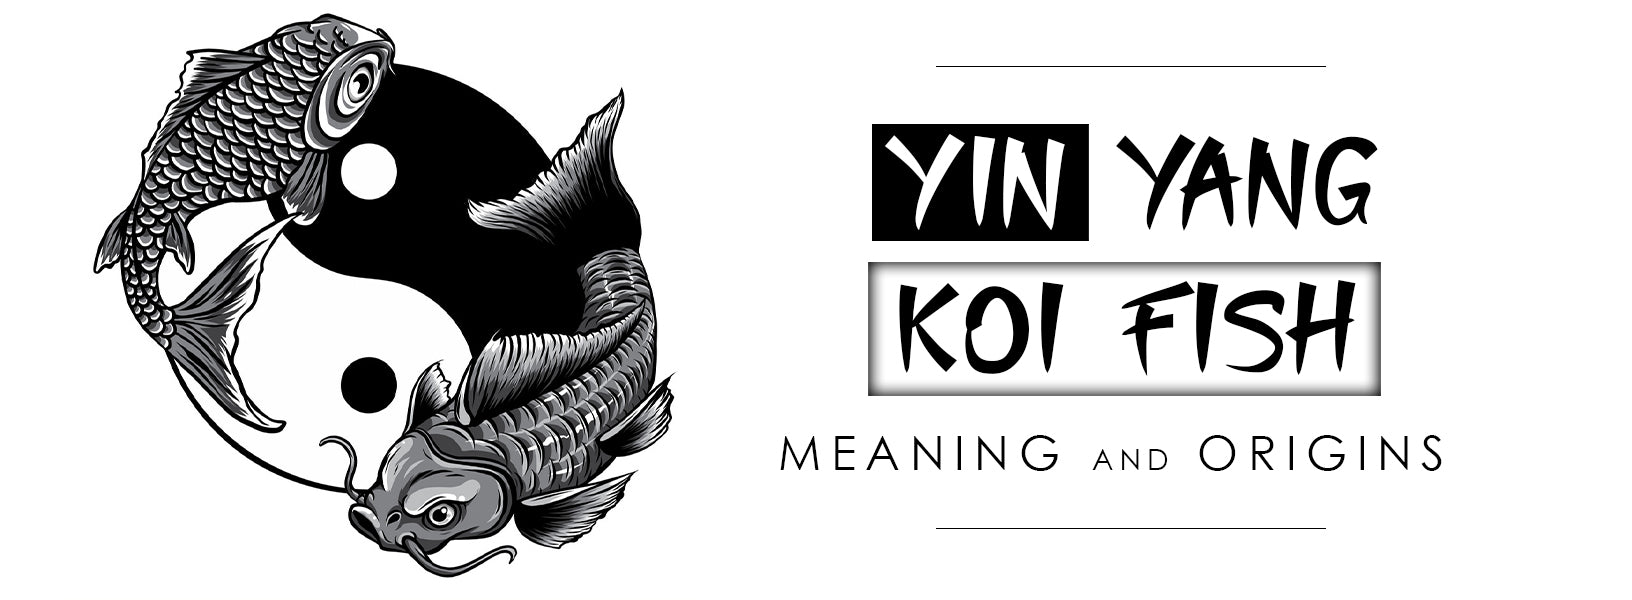 Yin Yang Koi Fish Meaning